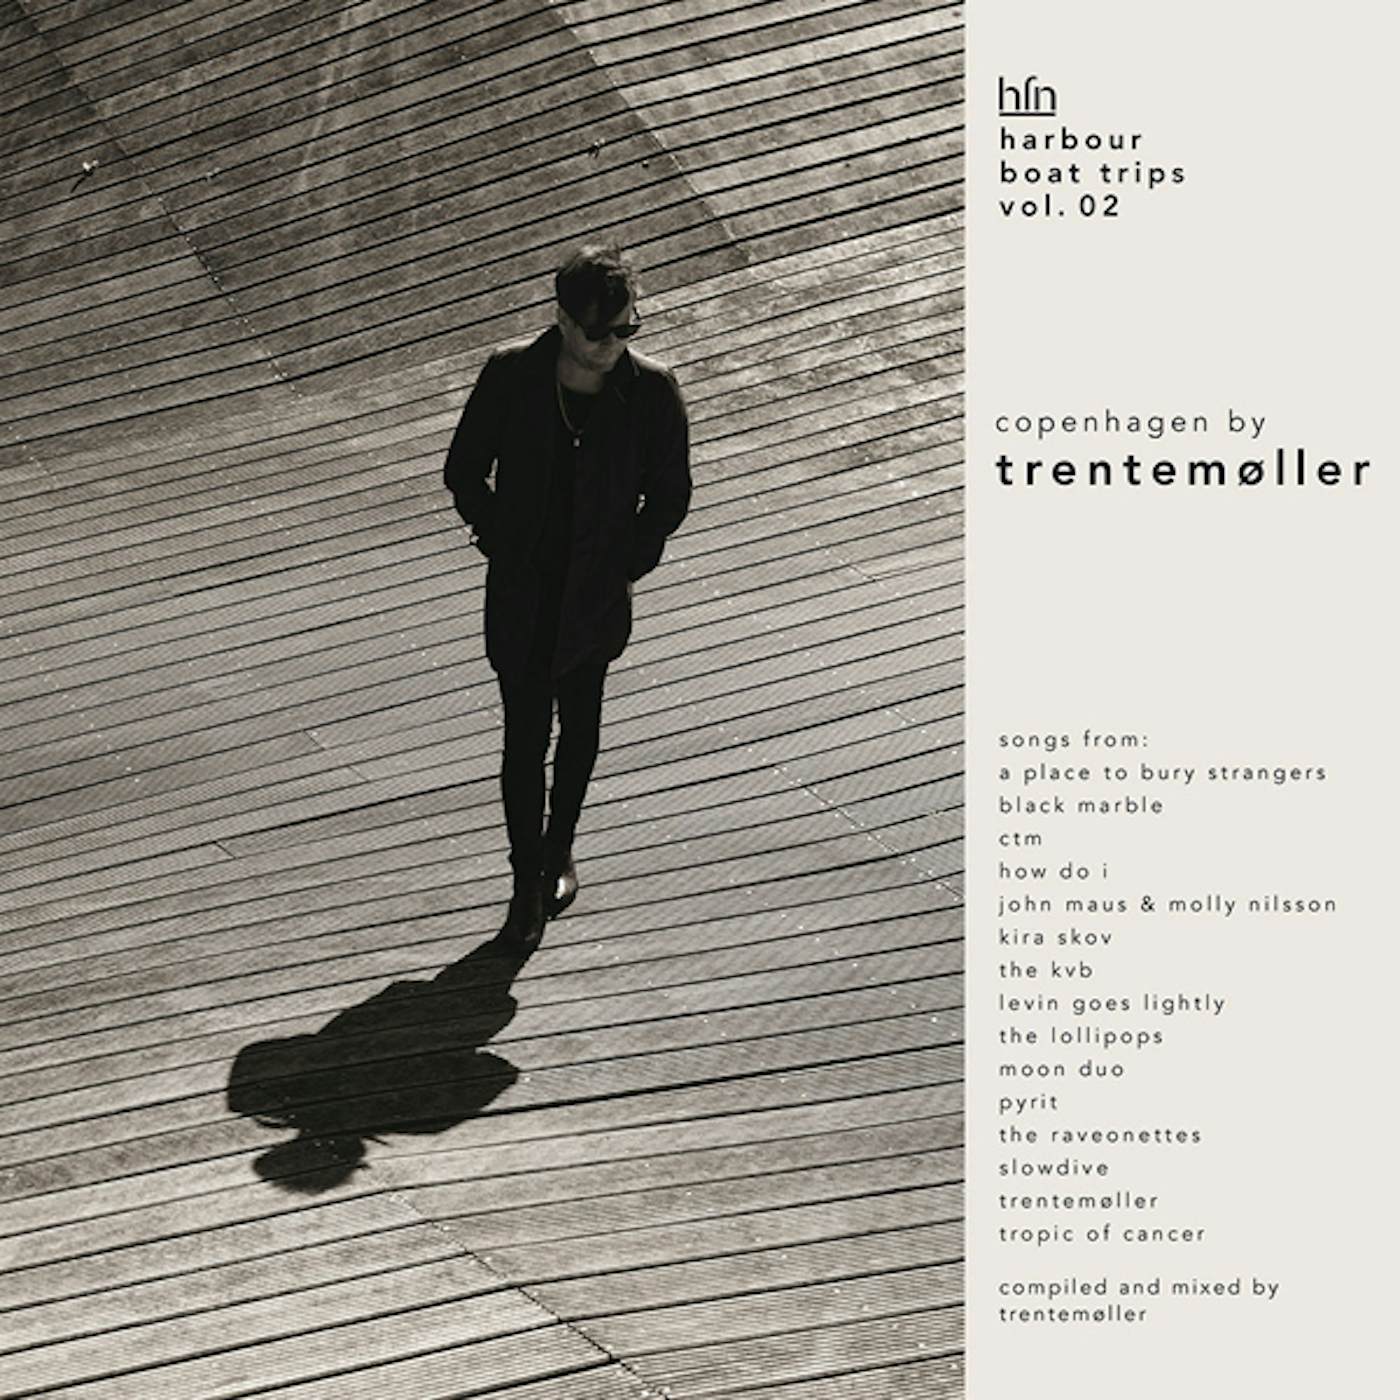 Trentemøller HARBOUR BOAT TRIPS 02: COPENHAGEN CD